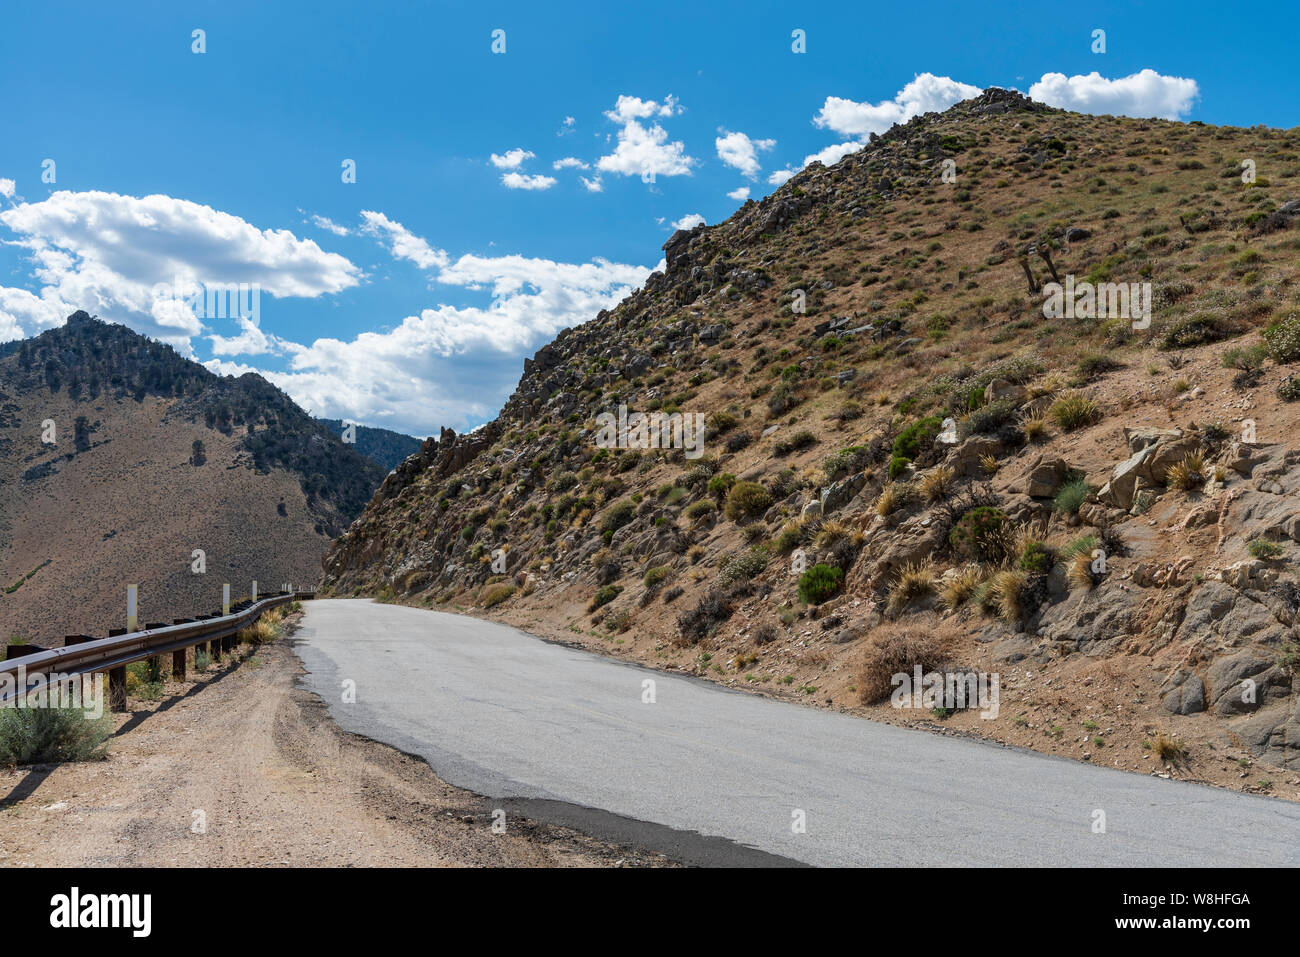 Deserto montagna in salita su strada asfaltata con guard rail sotto il cielo blu con nuvole bianche. Foto Stock